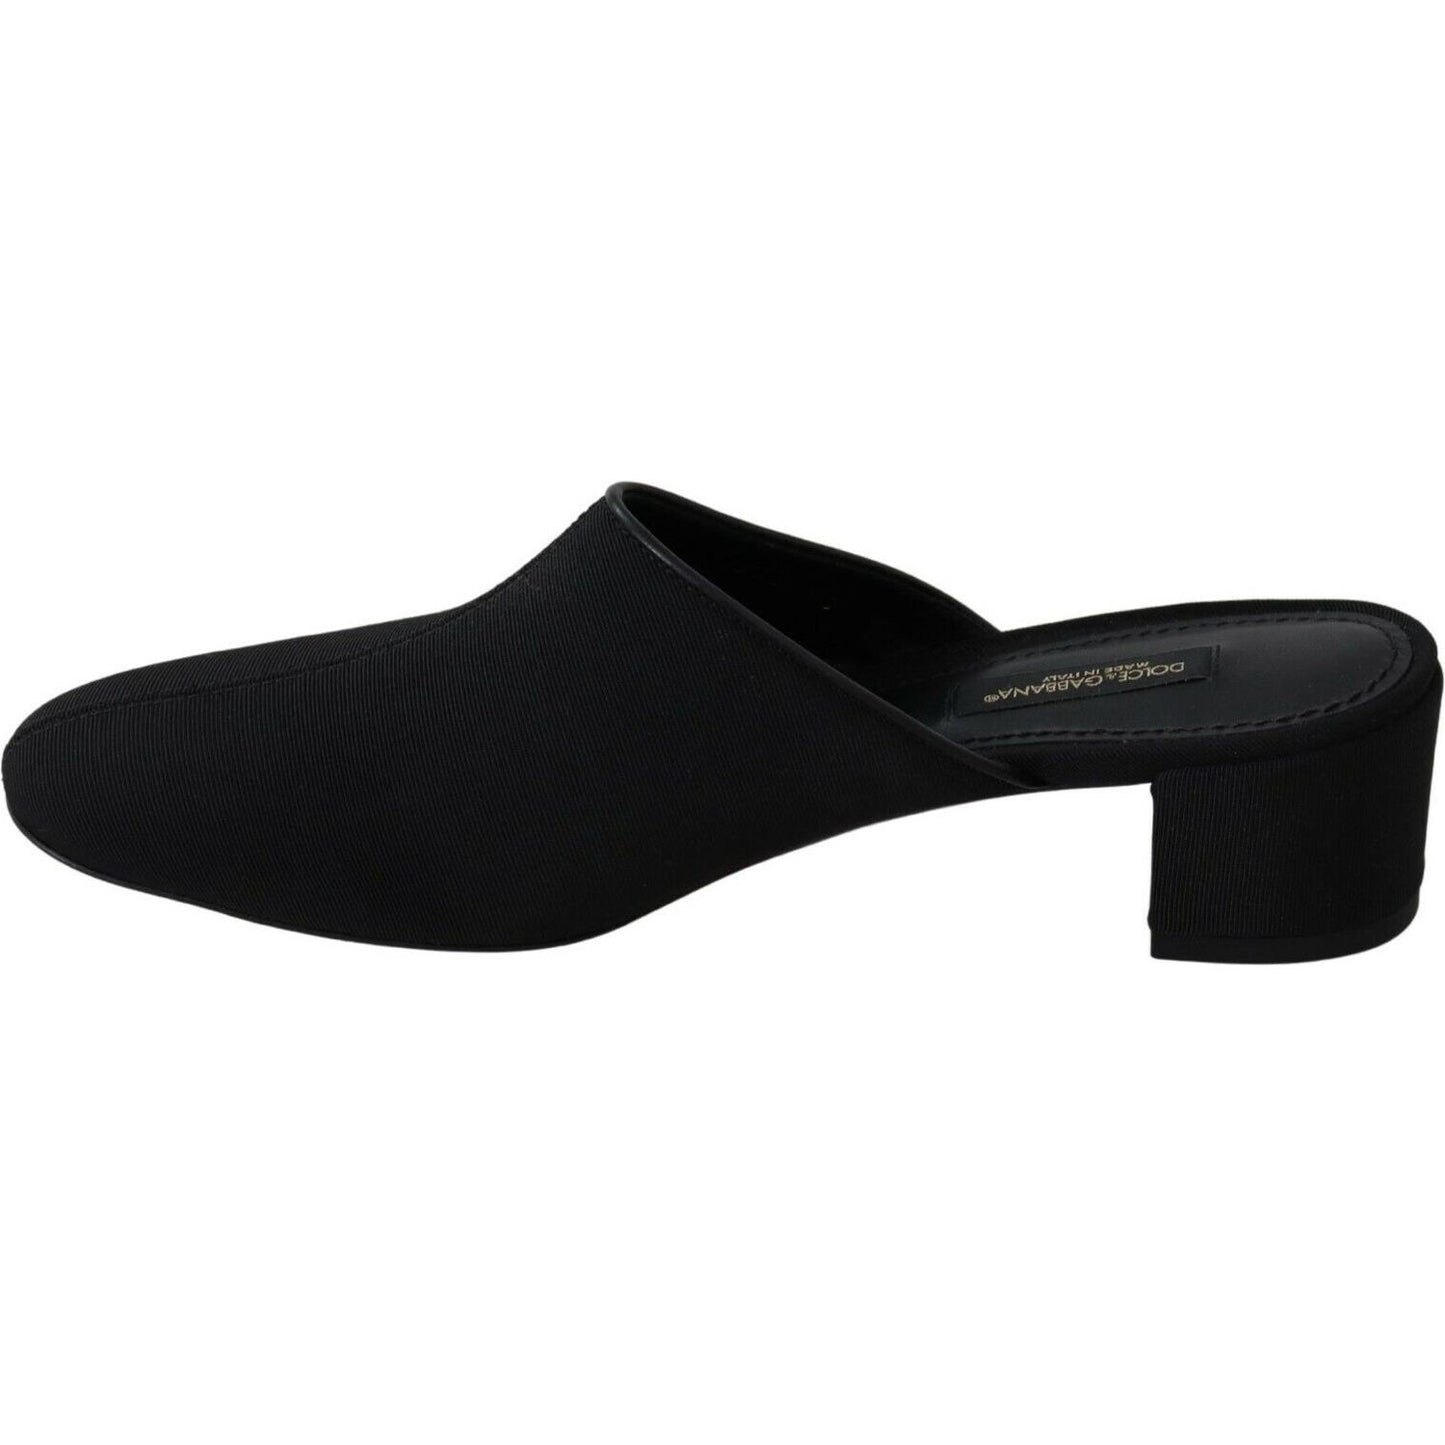 Dolce & Gabbana Chic Black Grosgrain Slide Sandals black-grosgrain-slides-sandals-women-shoes WOMAN SANDALS s-l1600-2022-09-05T164604.403-eaffd17d-2d8.jpg